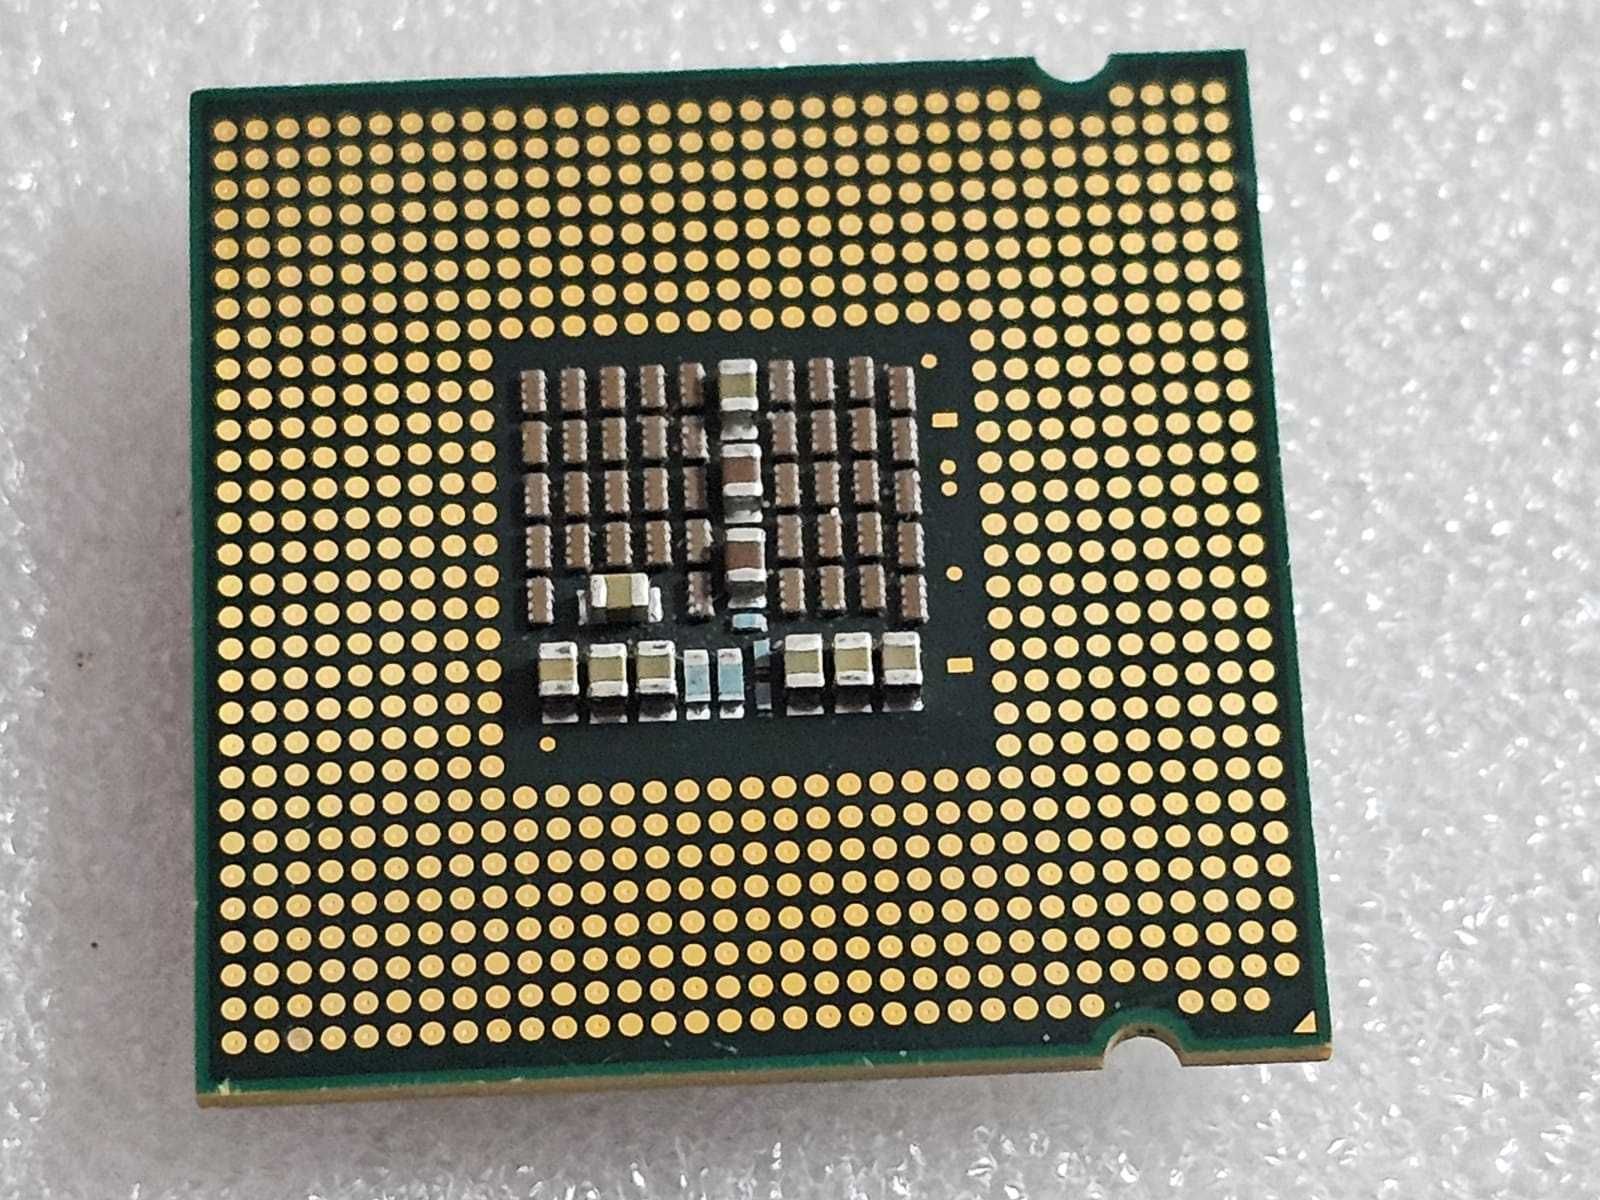 Procesor Intel Core 2 Quad Q6600, 2.4Ghz, 8Mb, 1066Mhz, LGA775